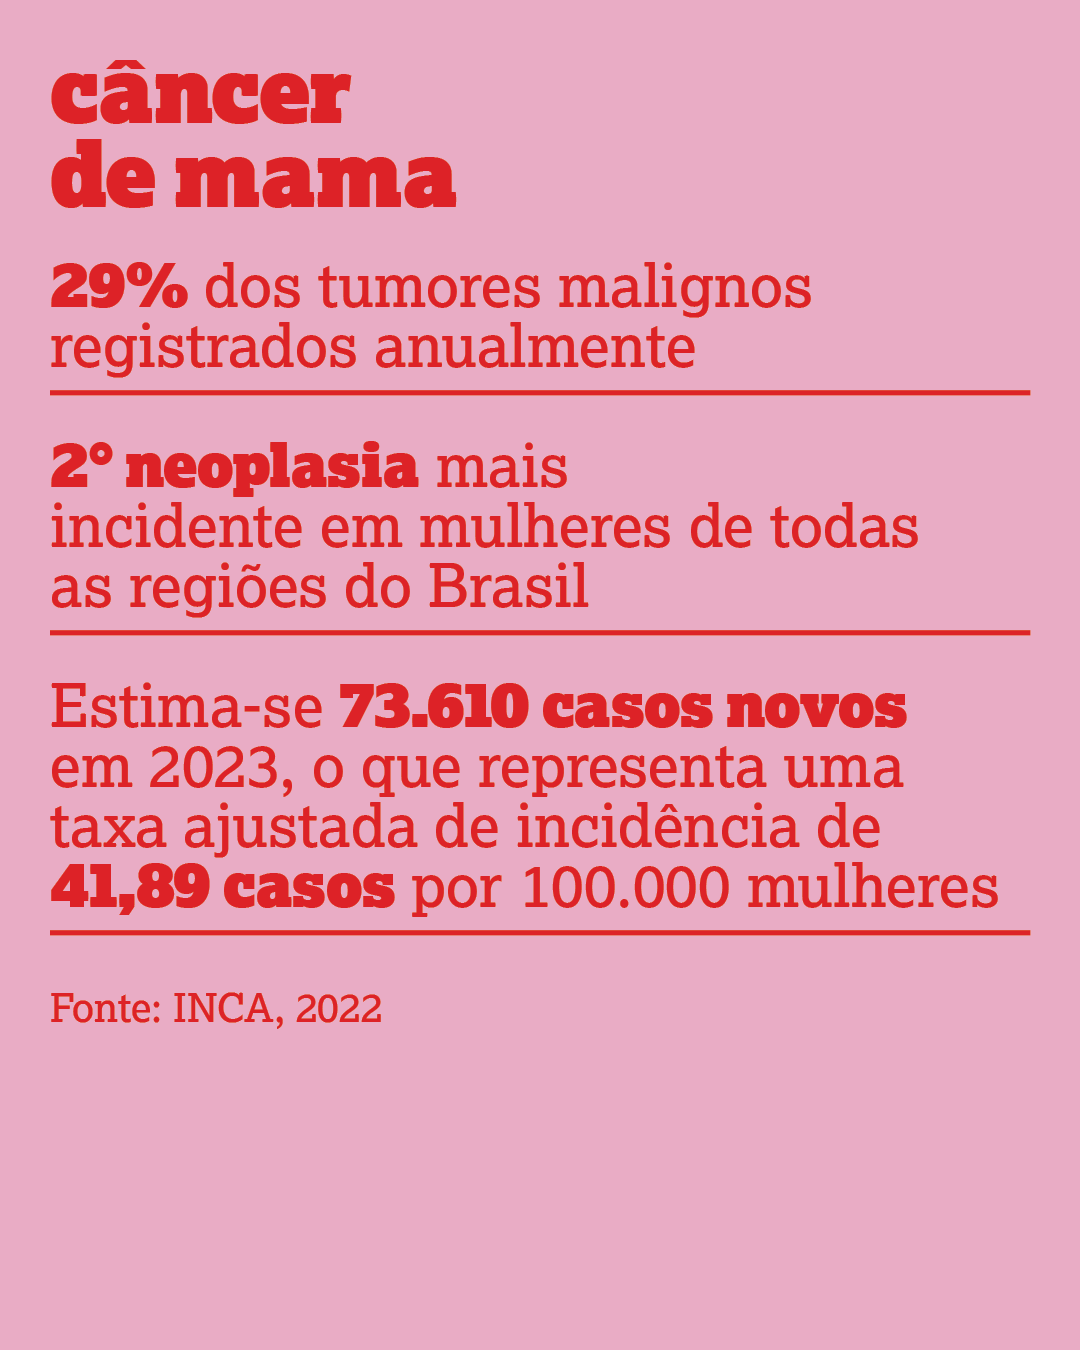 Câncer de mama29% dos tumores malignos registrados anualmente2° neoplasia mais incidente em mulheres de todas as regiões do BrasilEstima-se 73.610 casos novos em 2023, o que representa uma taxa ajustada de incidência de 41,89 casos por 100.000 mulheres(INCA, 2022).